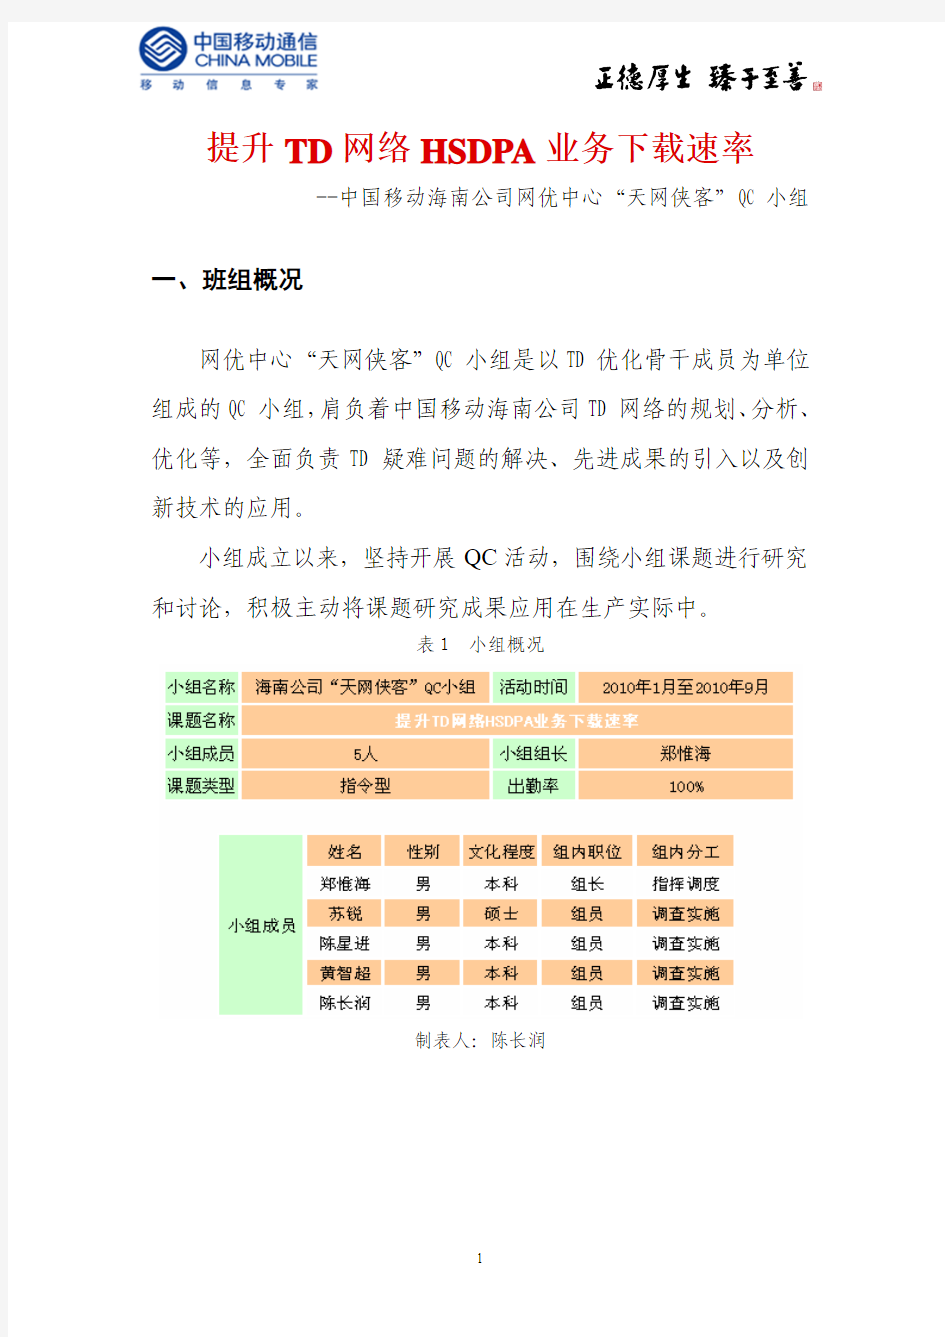 【海南公司】提升TD网络HSDPA业务下载速率